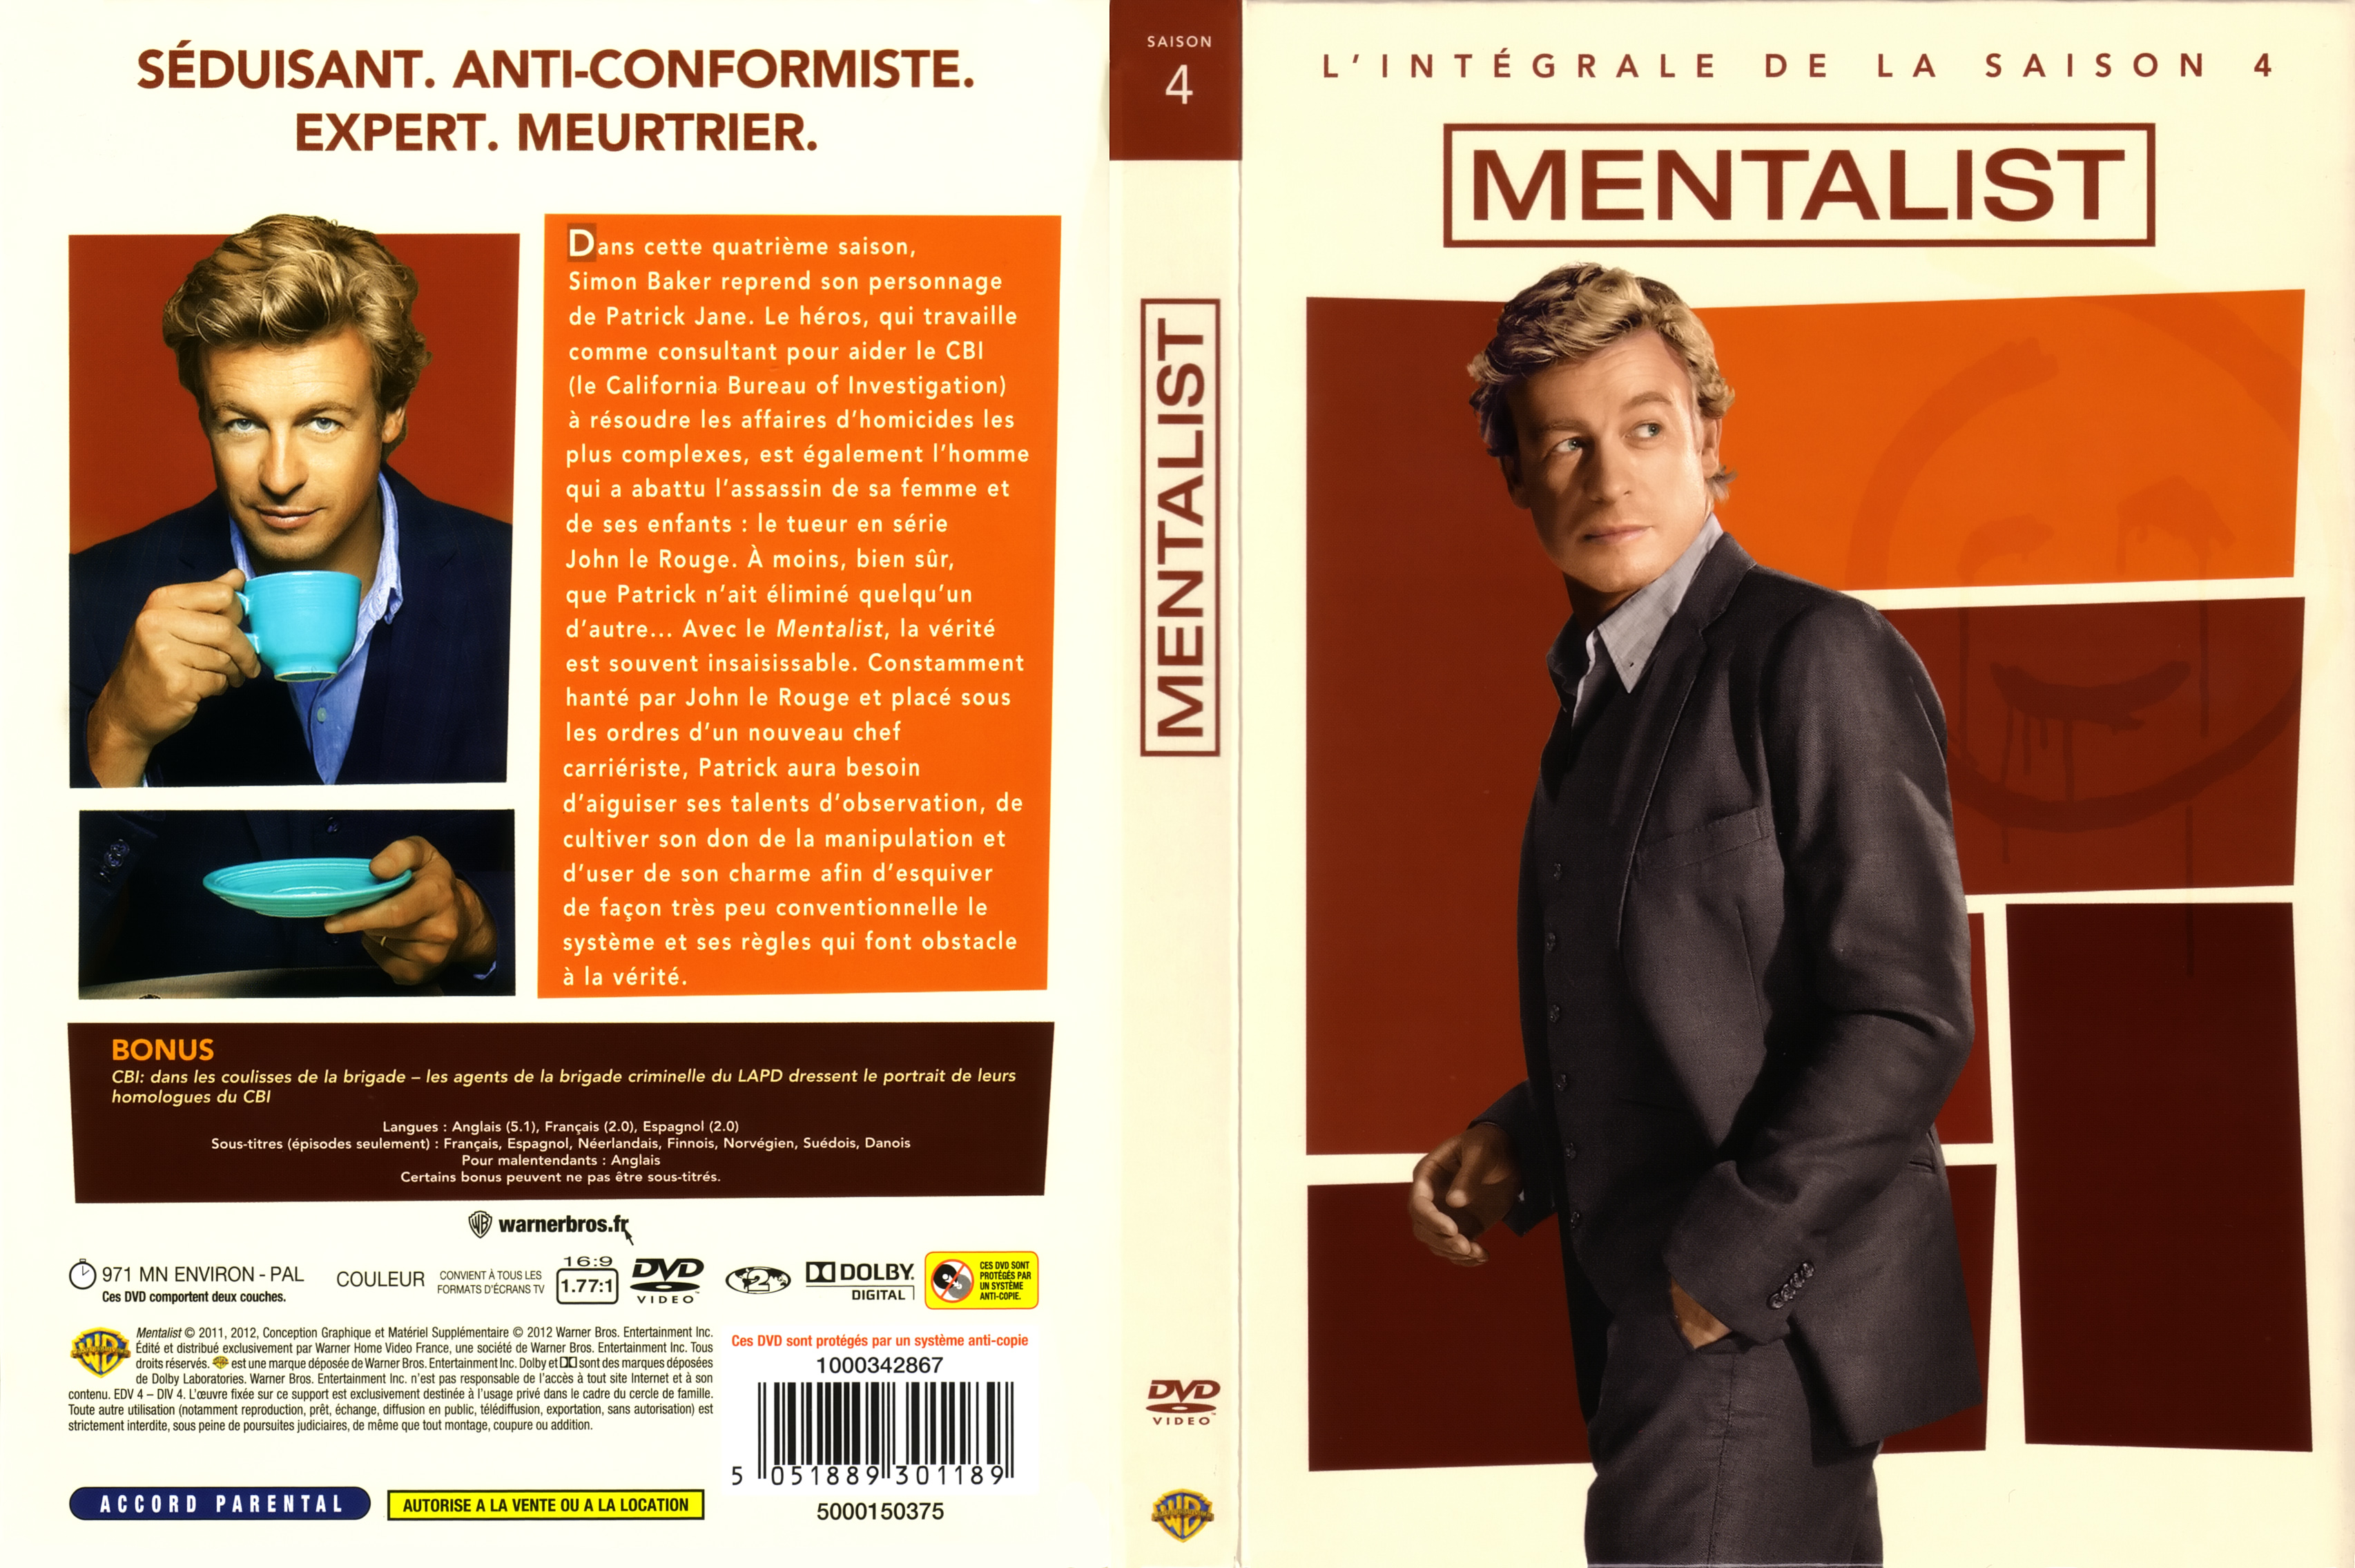 Jaquette DVD The mentalist Saison 4 COFFRET